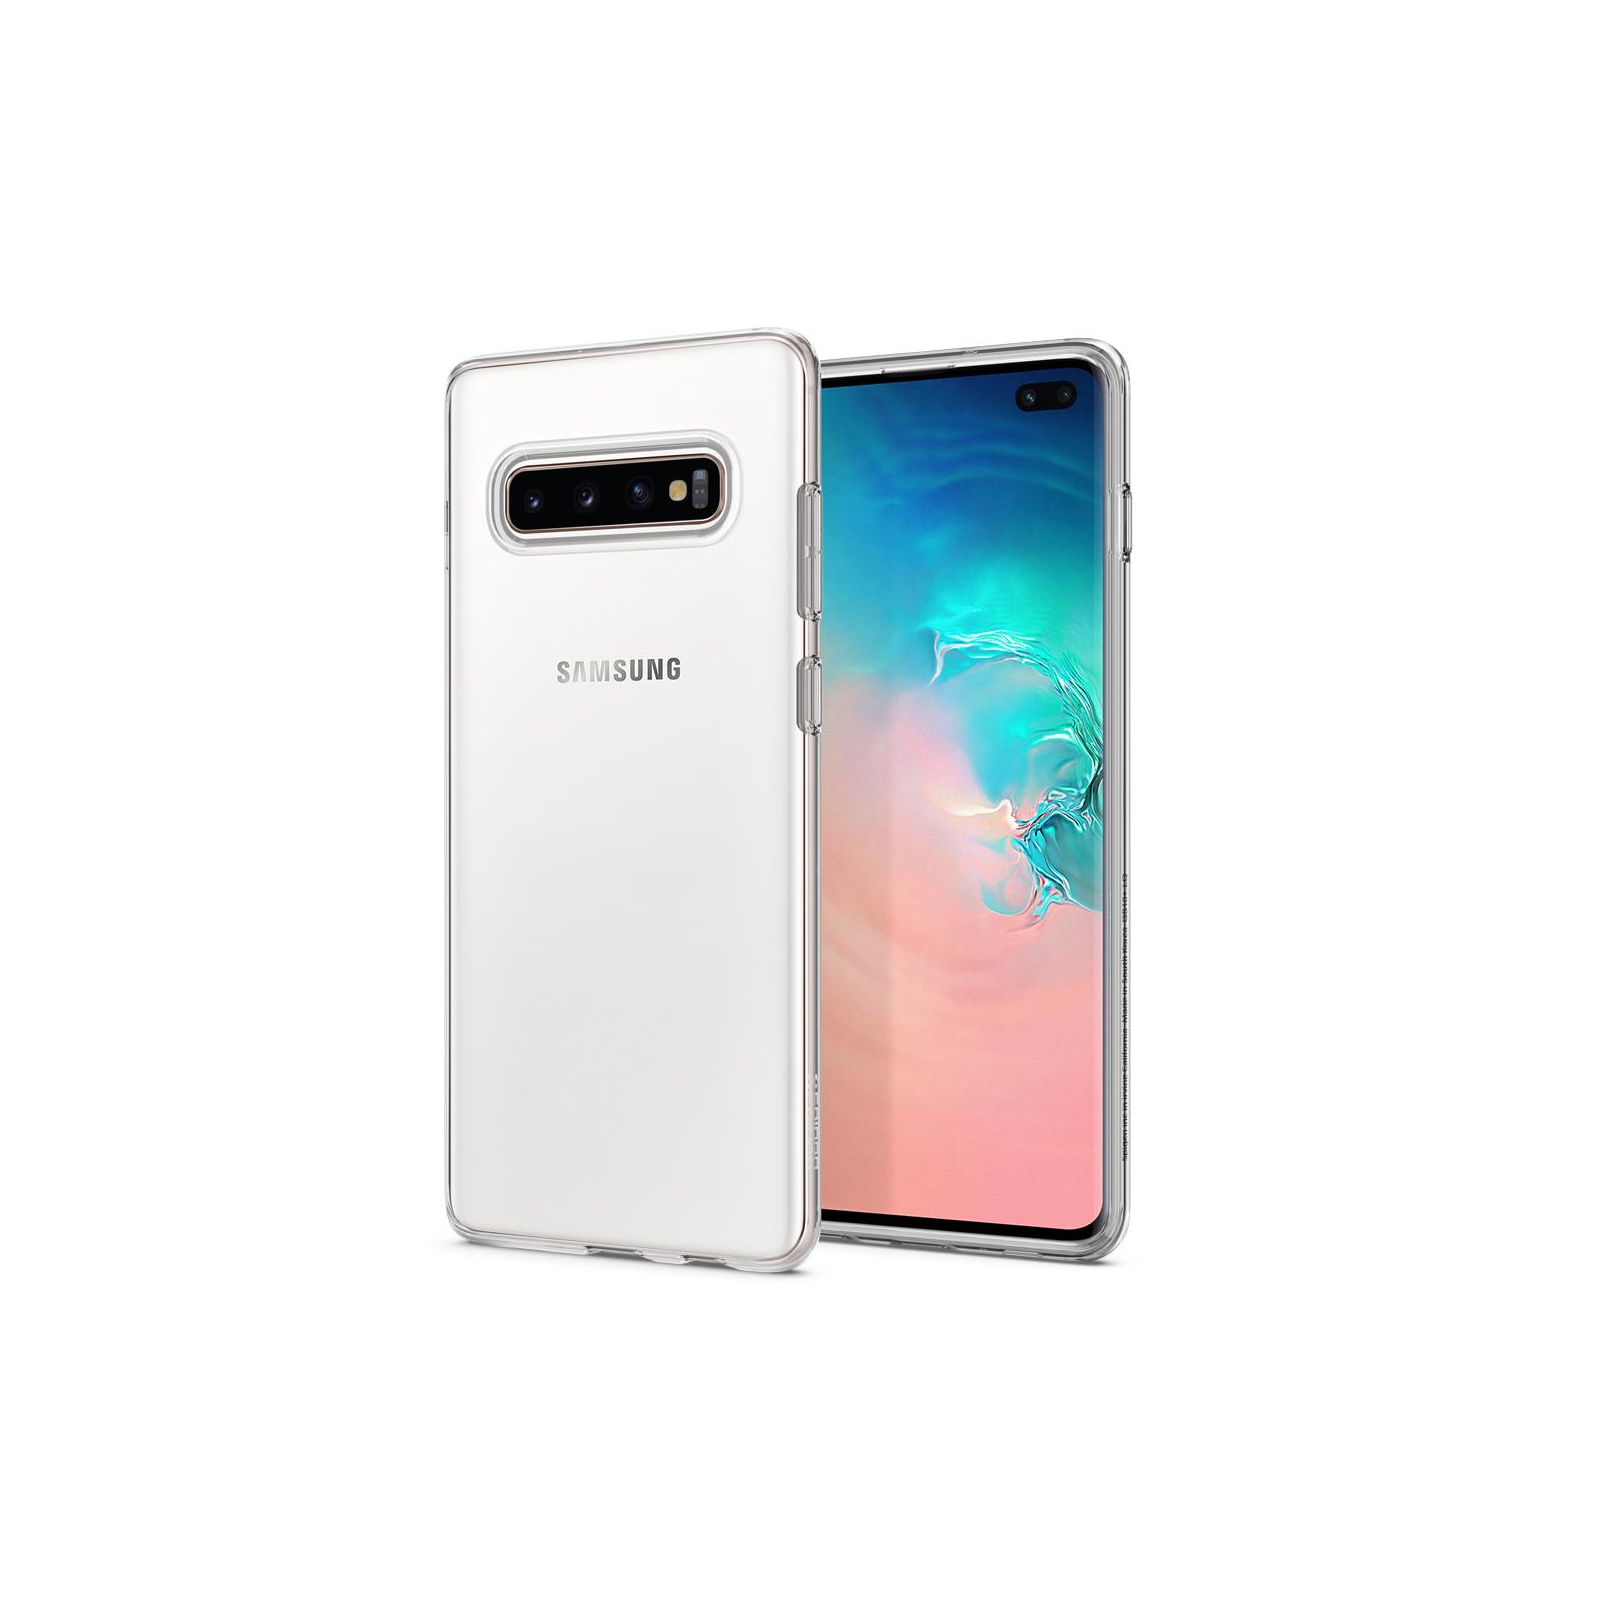 Чехол для мобильного телефона Spigen Galaxy S10+ Liquid Crystal Crystal Clear (606CS25761) изображение 11